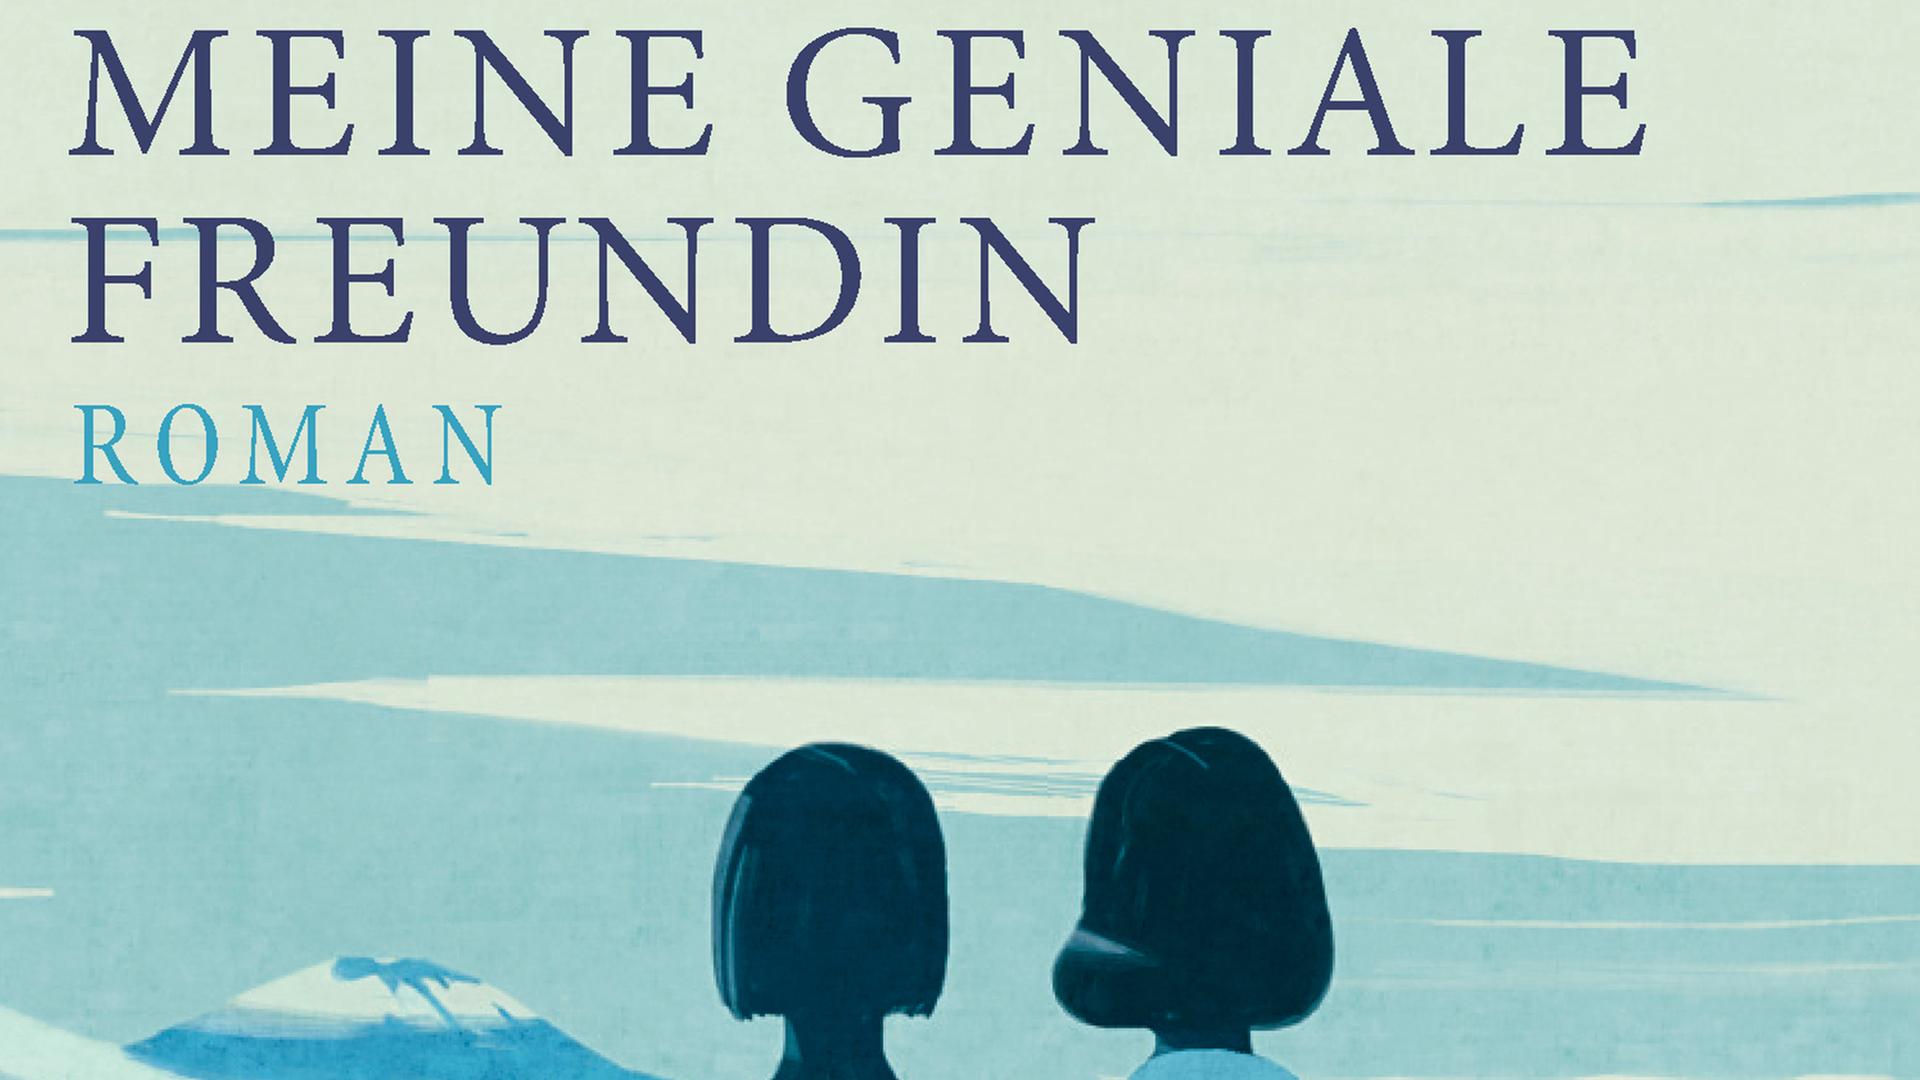 Buchcover: "Meine geniale Freundin" von Elena Ferrante